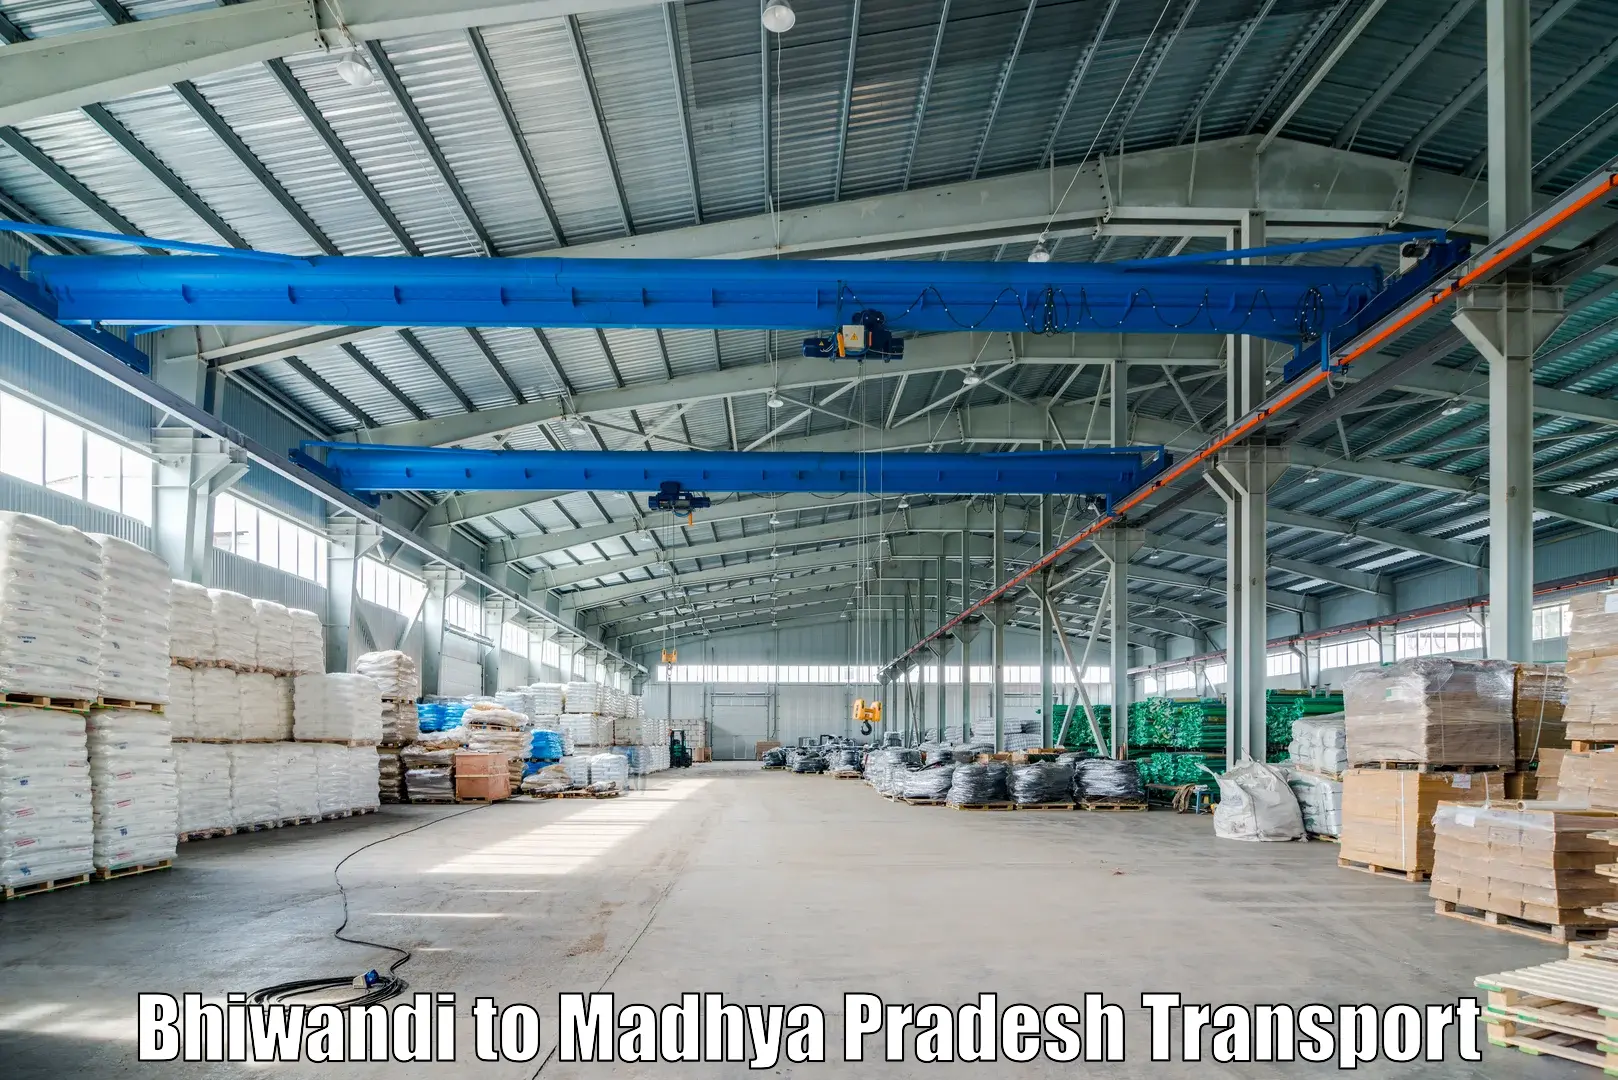 Truck transport companies in India Bhiwandi to Manasa